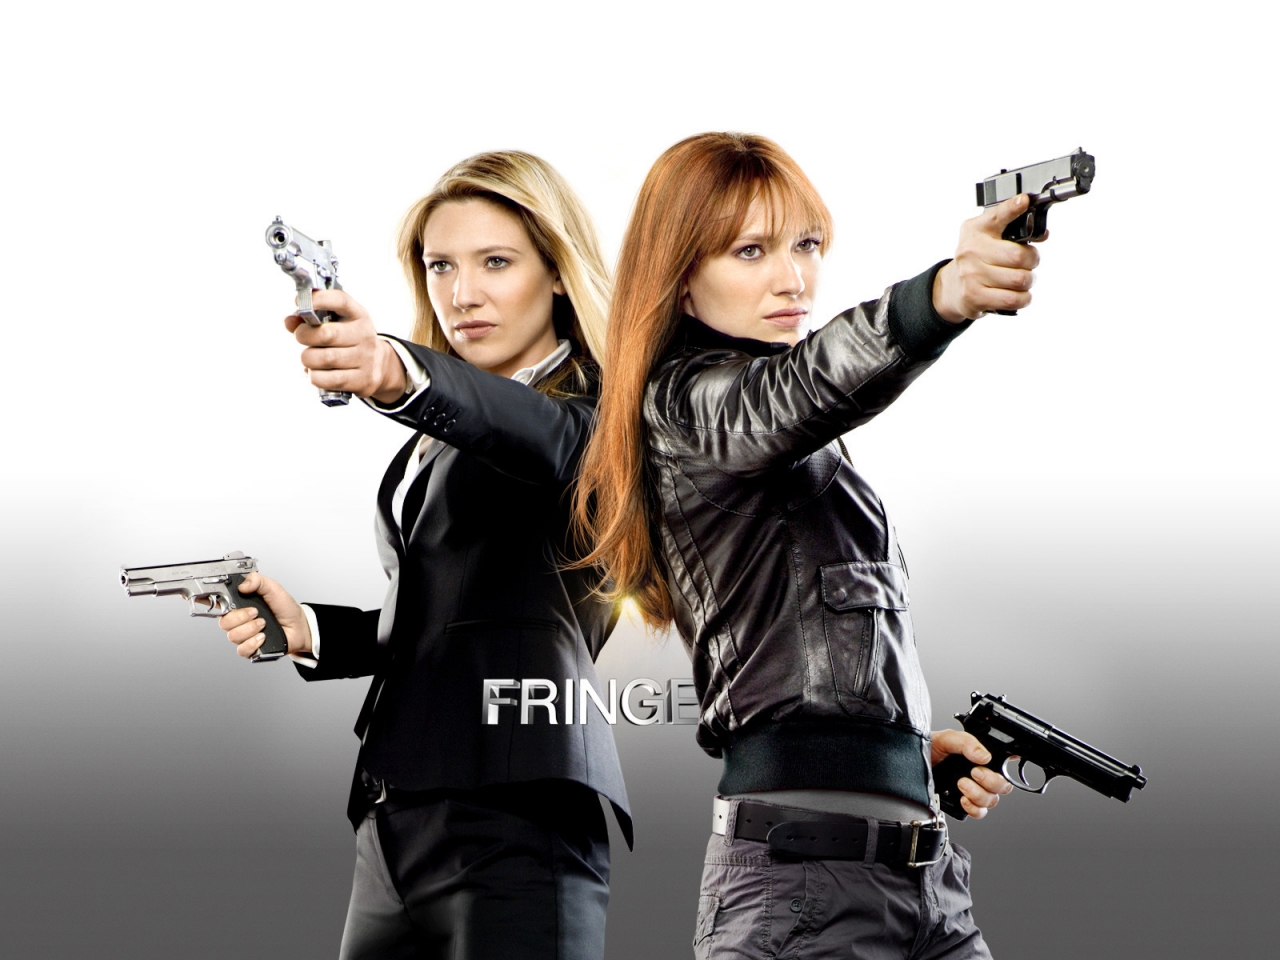 Fringe TV Series Season 4 for 1280 x 960 resolution